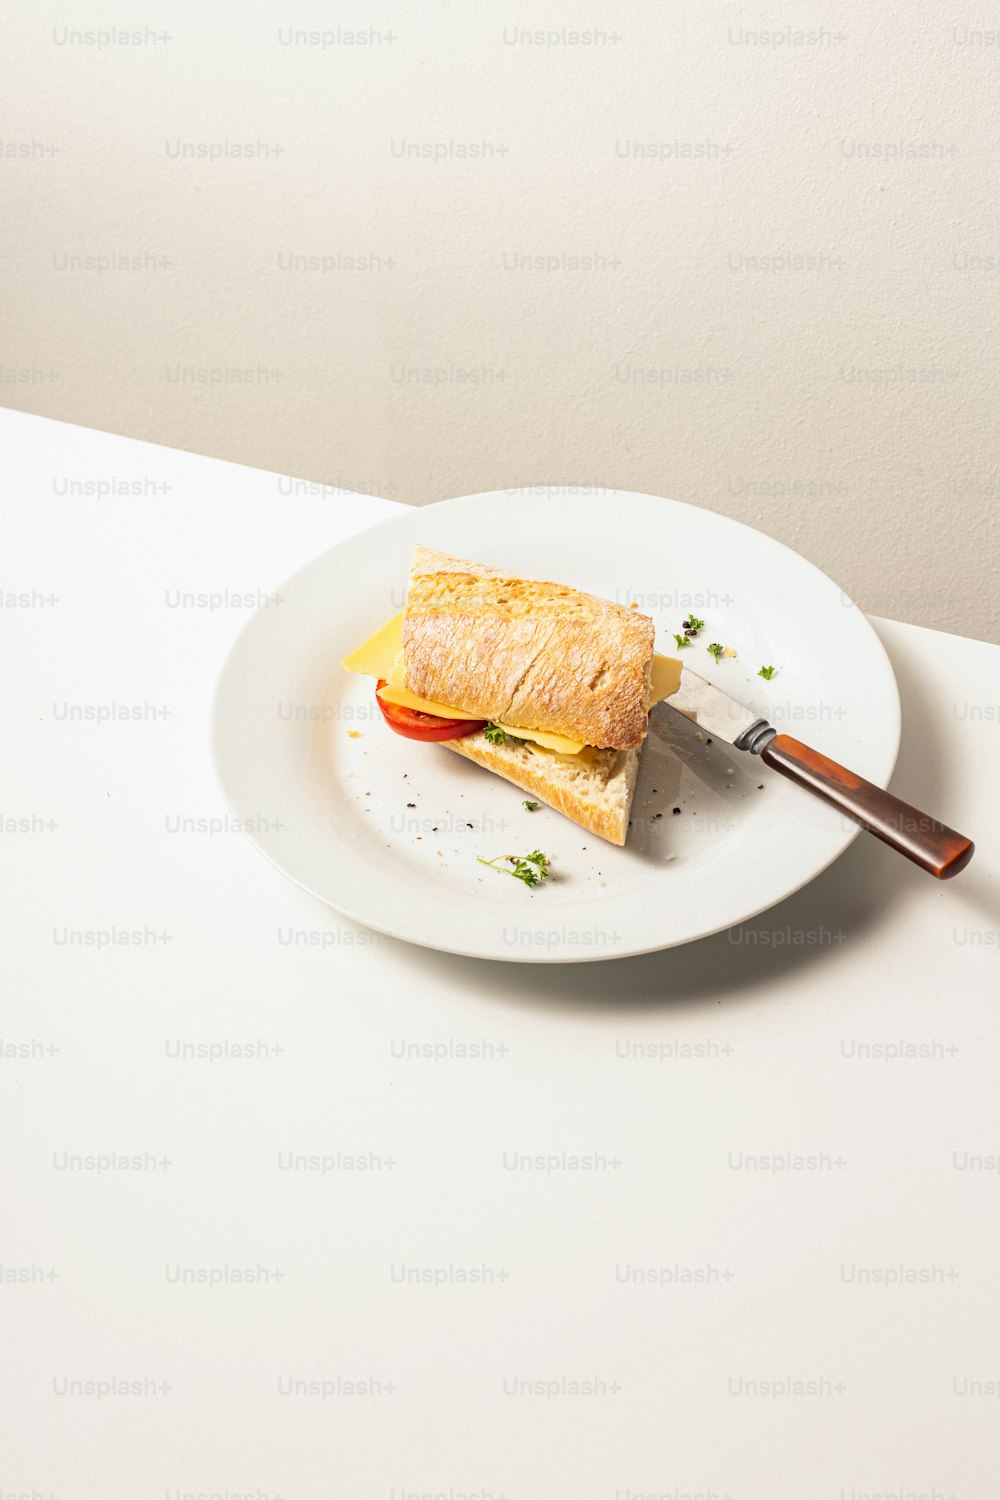 Un sandwich dans une assiette